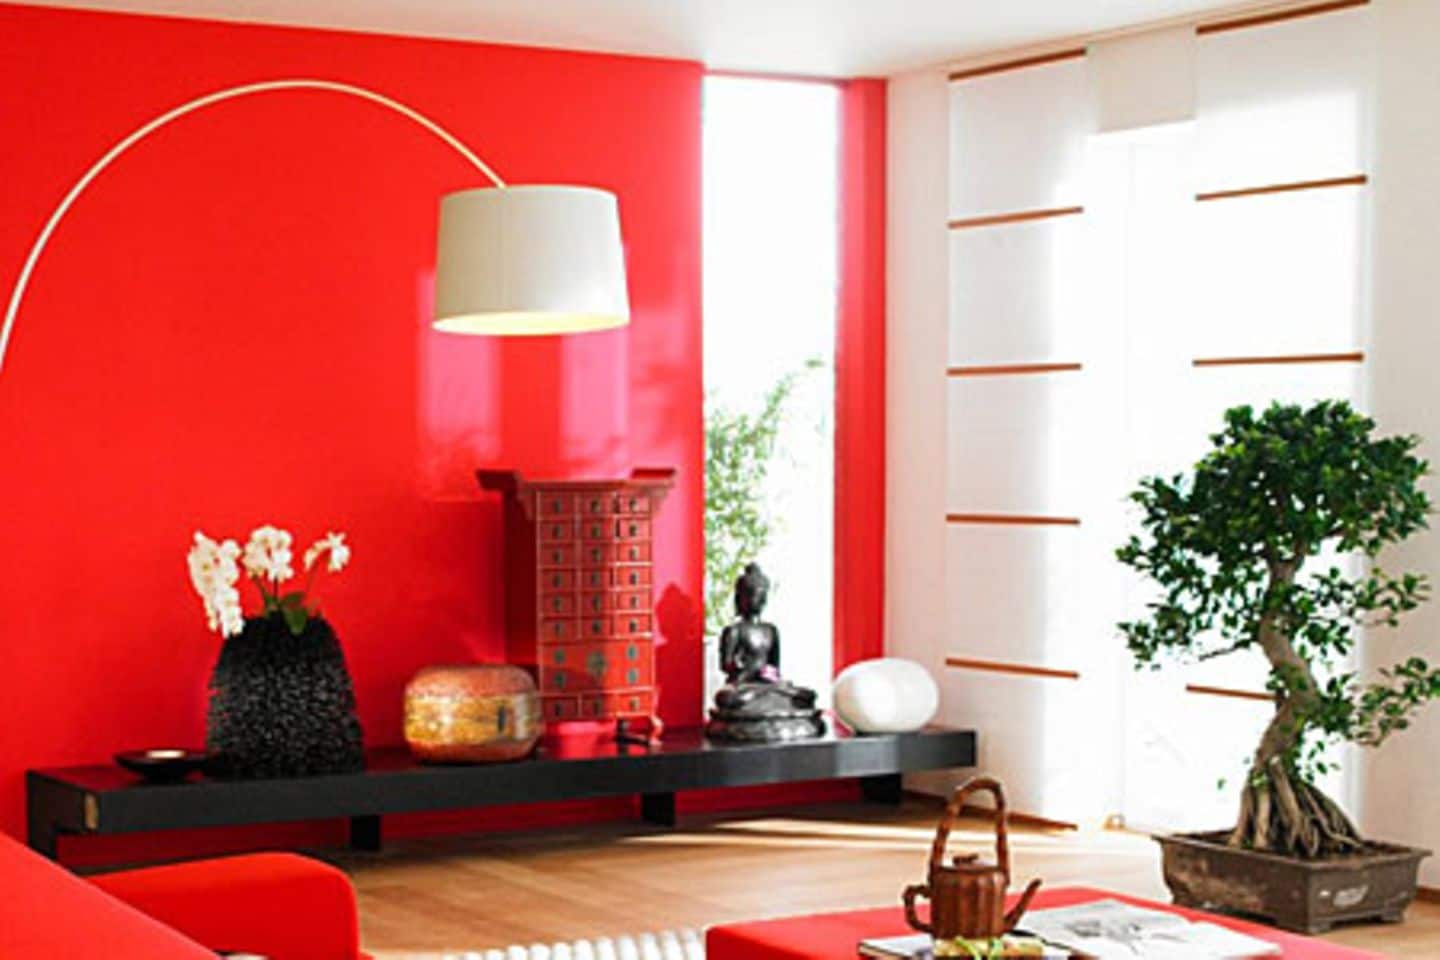 Farbige Wand in kräftigem Rot - Bild 4